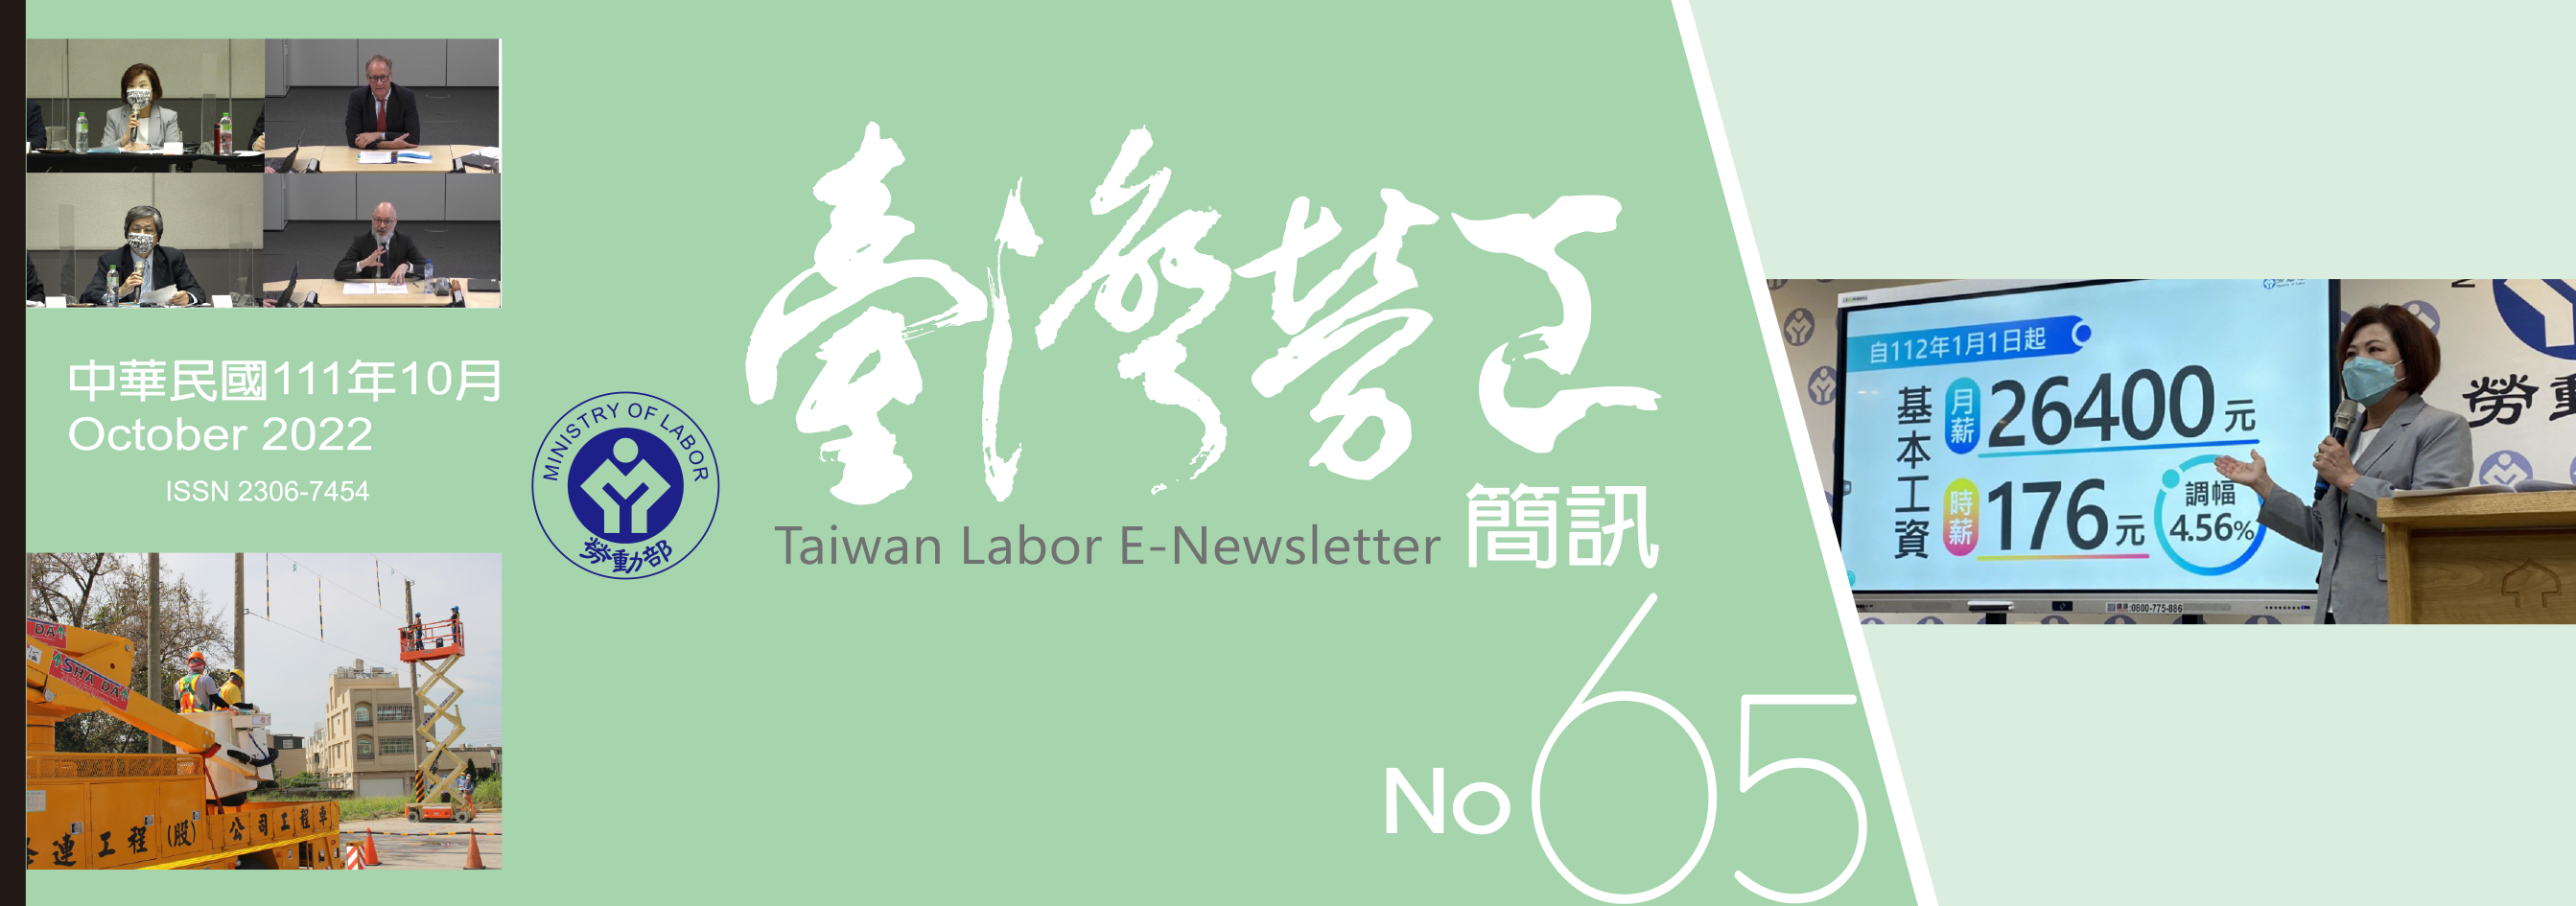 台灣勞工簡訊第65期刊頭封面